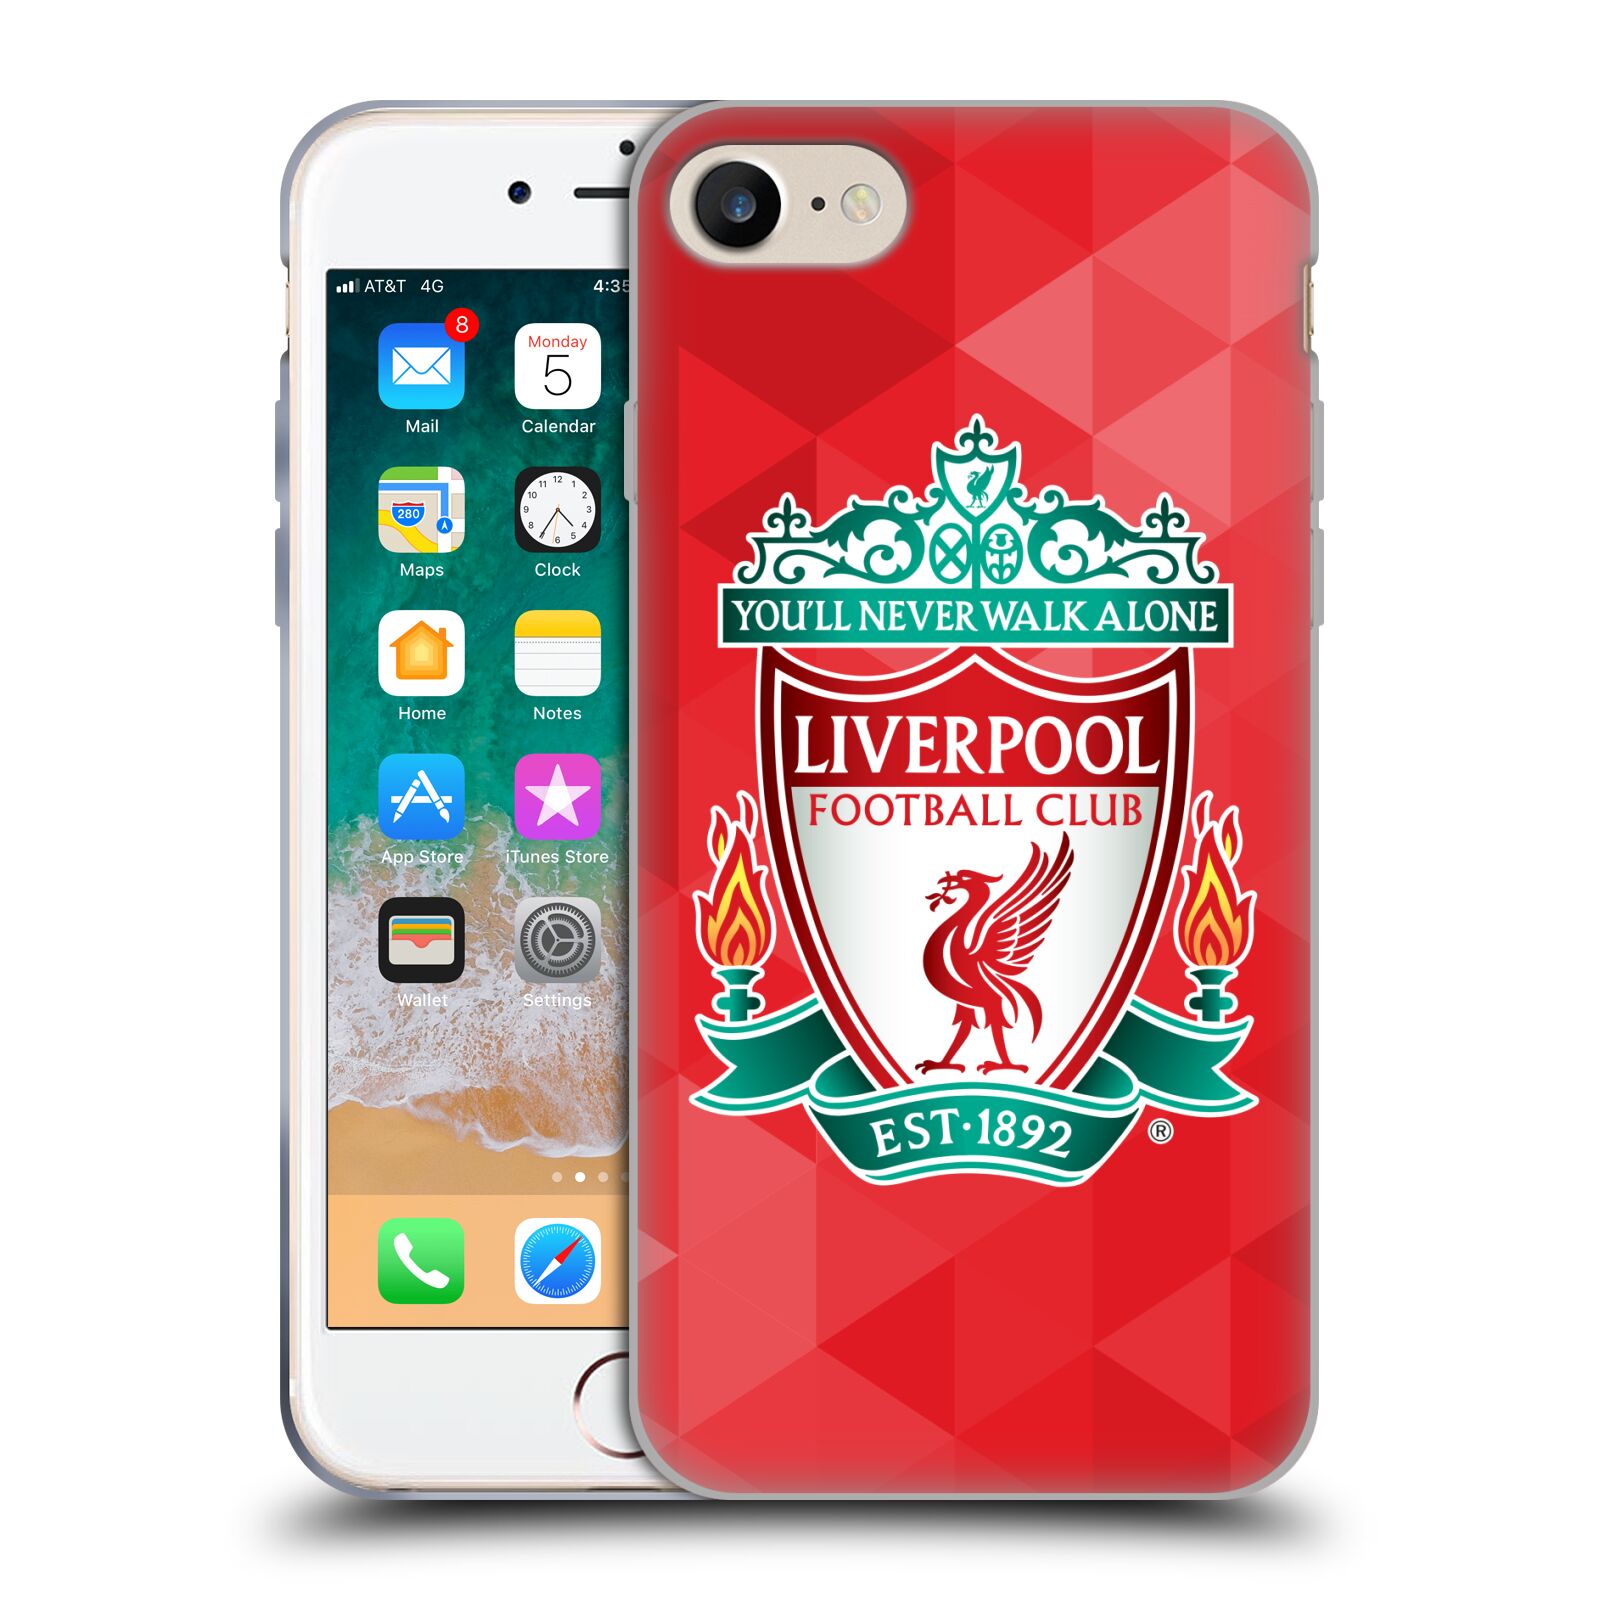 Silikonové pouzdro na mobil Apple iPhone 7 HEAD CASE ZNAK LIVERPOOL FC OFFICIAL GEOMETRIC RED (Silikonový kryt či obal na mobilní telefon Liverpool FC Official pro Apple iPhone 7)